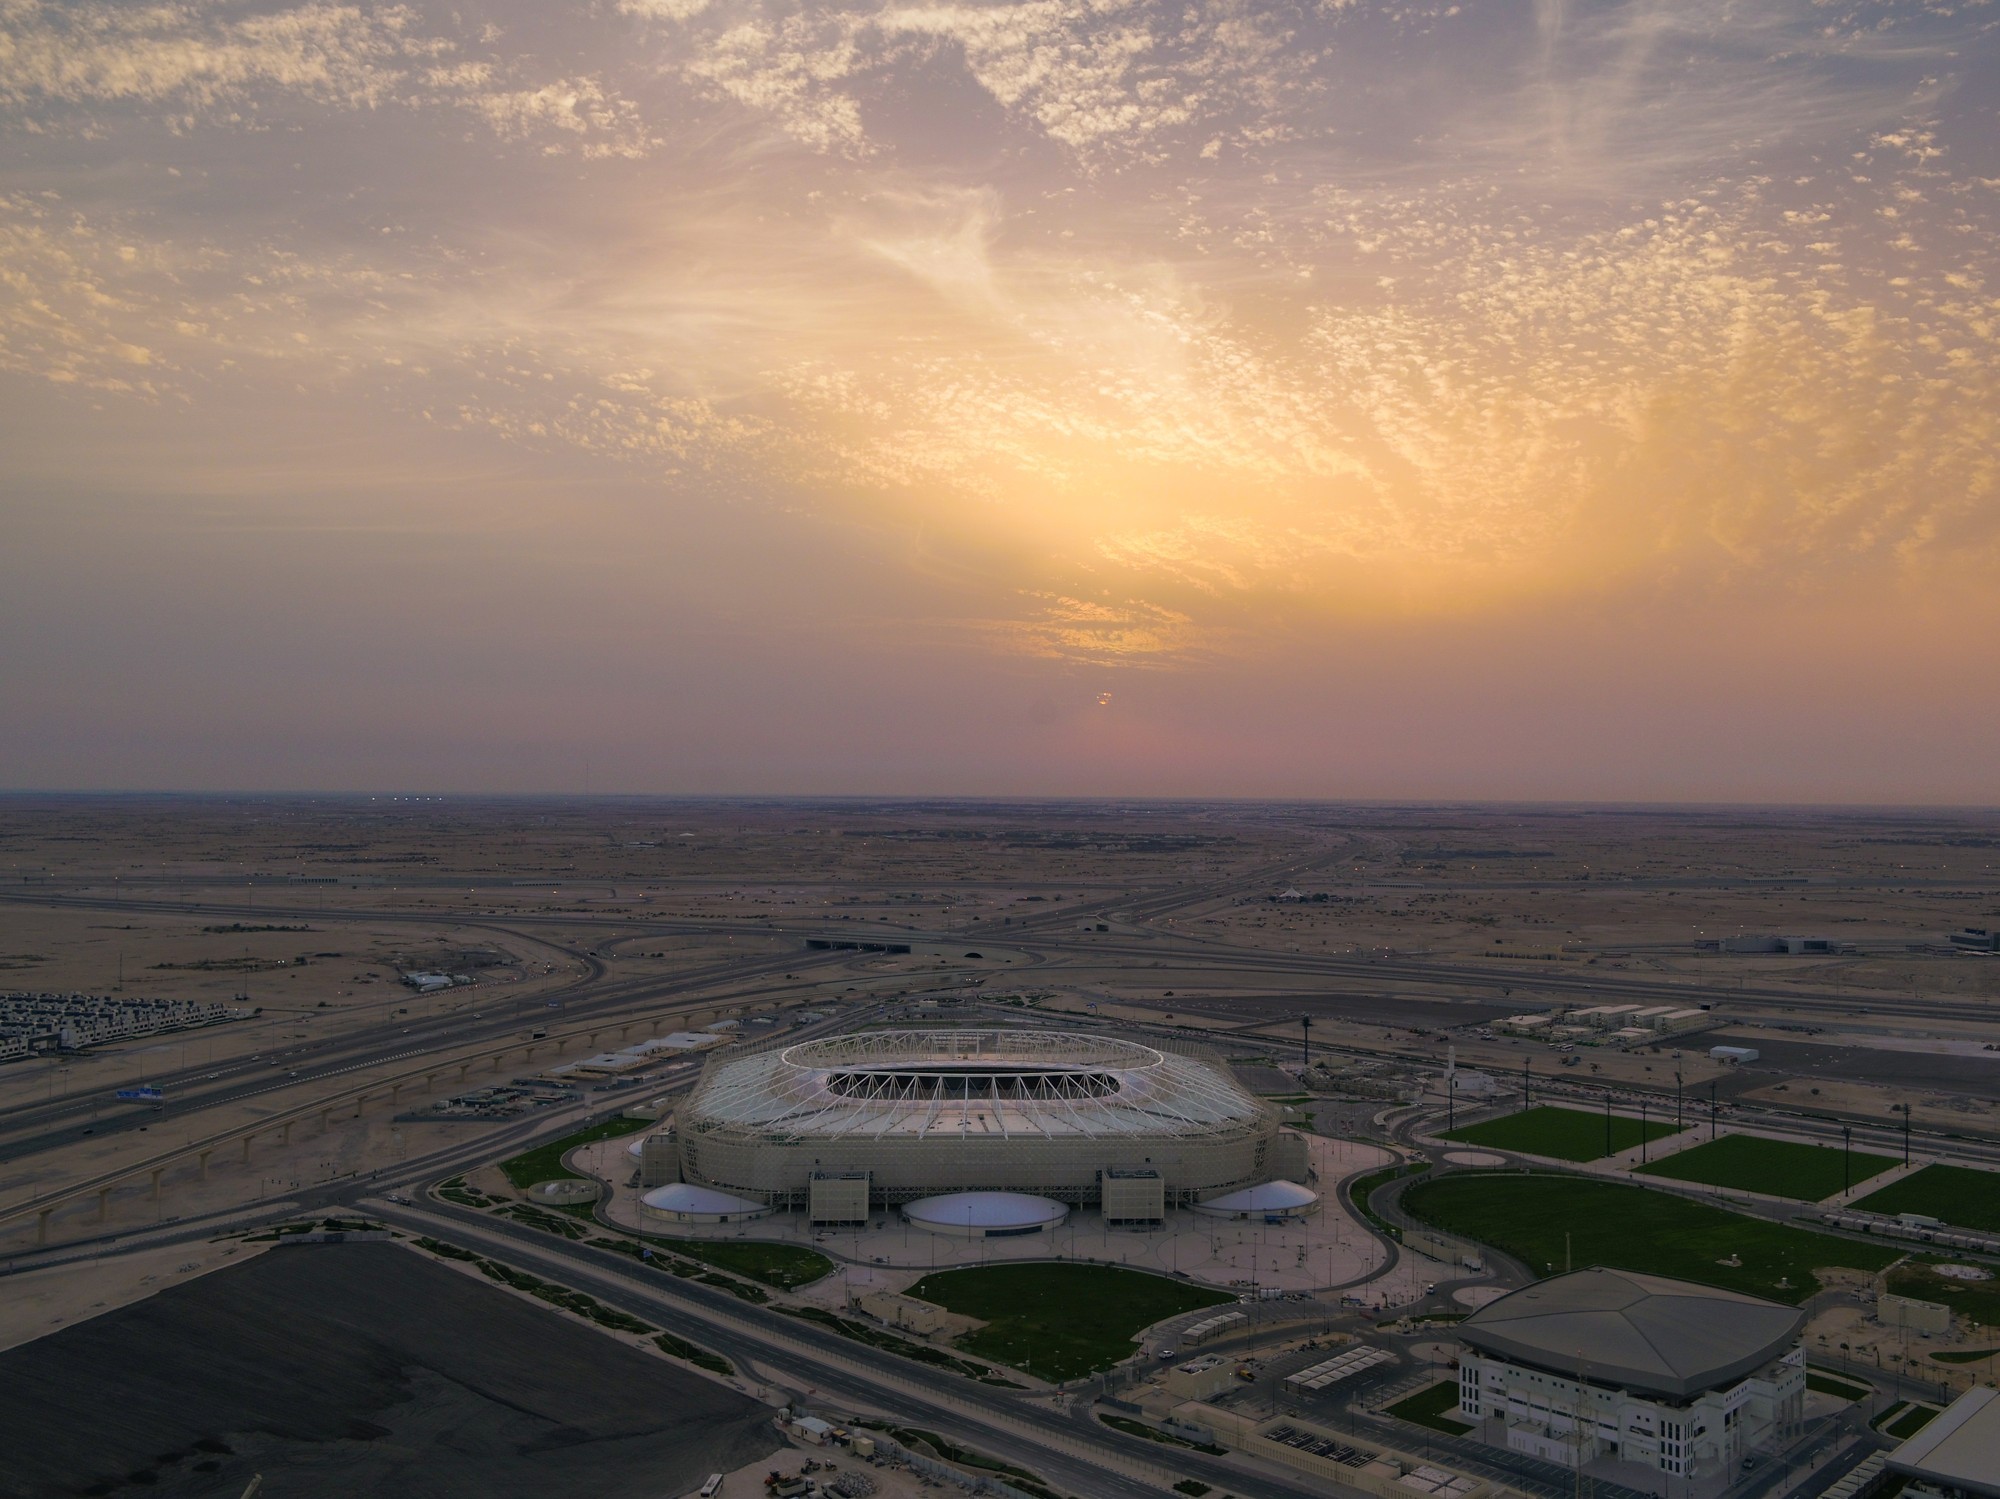 Ahmad bin Ali Stadium (Al-Rayyan Stadium) – StadiumDB.com